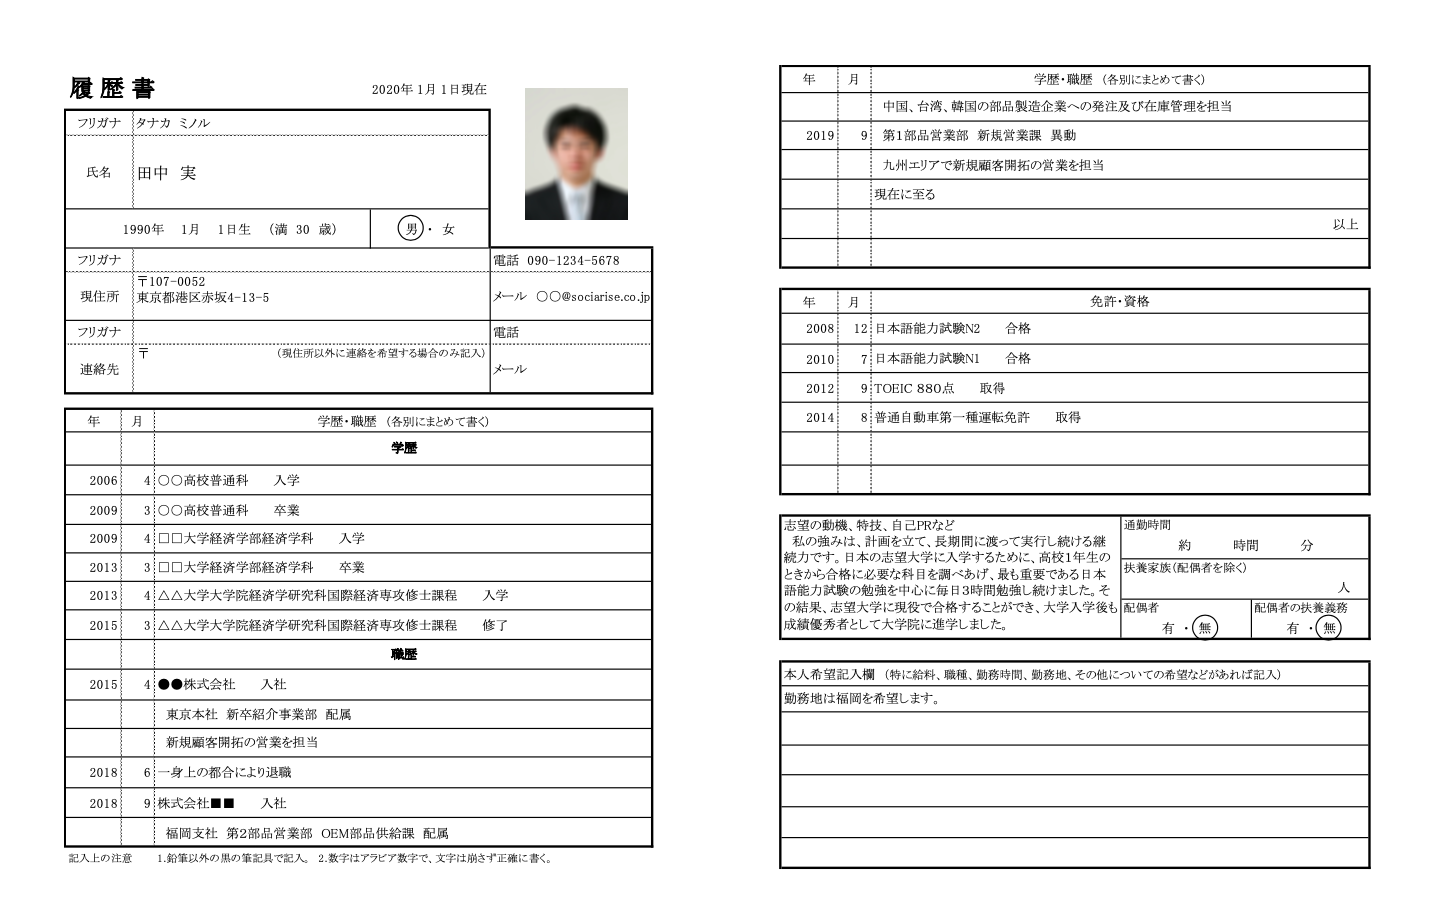 はじめての就活 履歴書 Curriculum Vitae Resume とは 日本で働き 学び 暮らす外国人専用のキャリアナビ Your Career